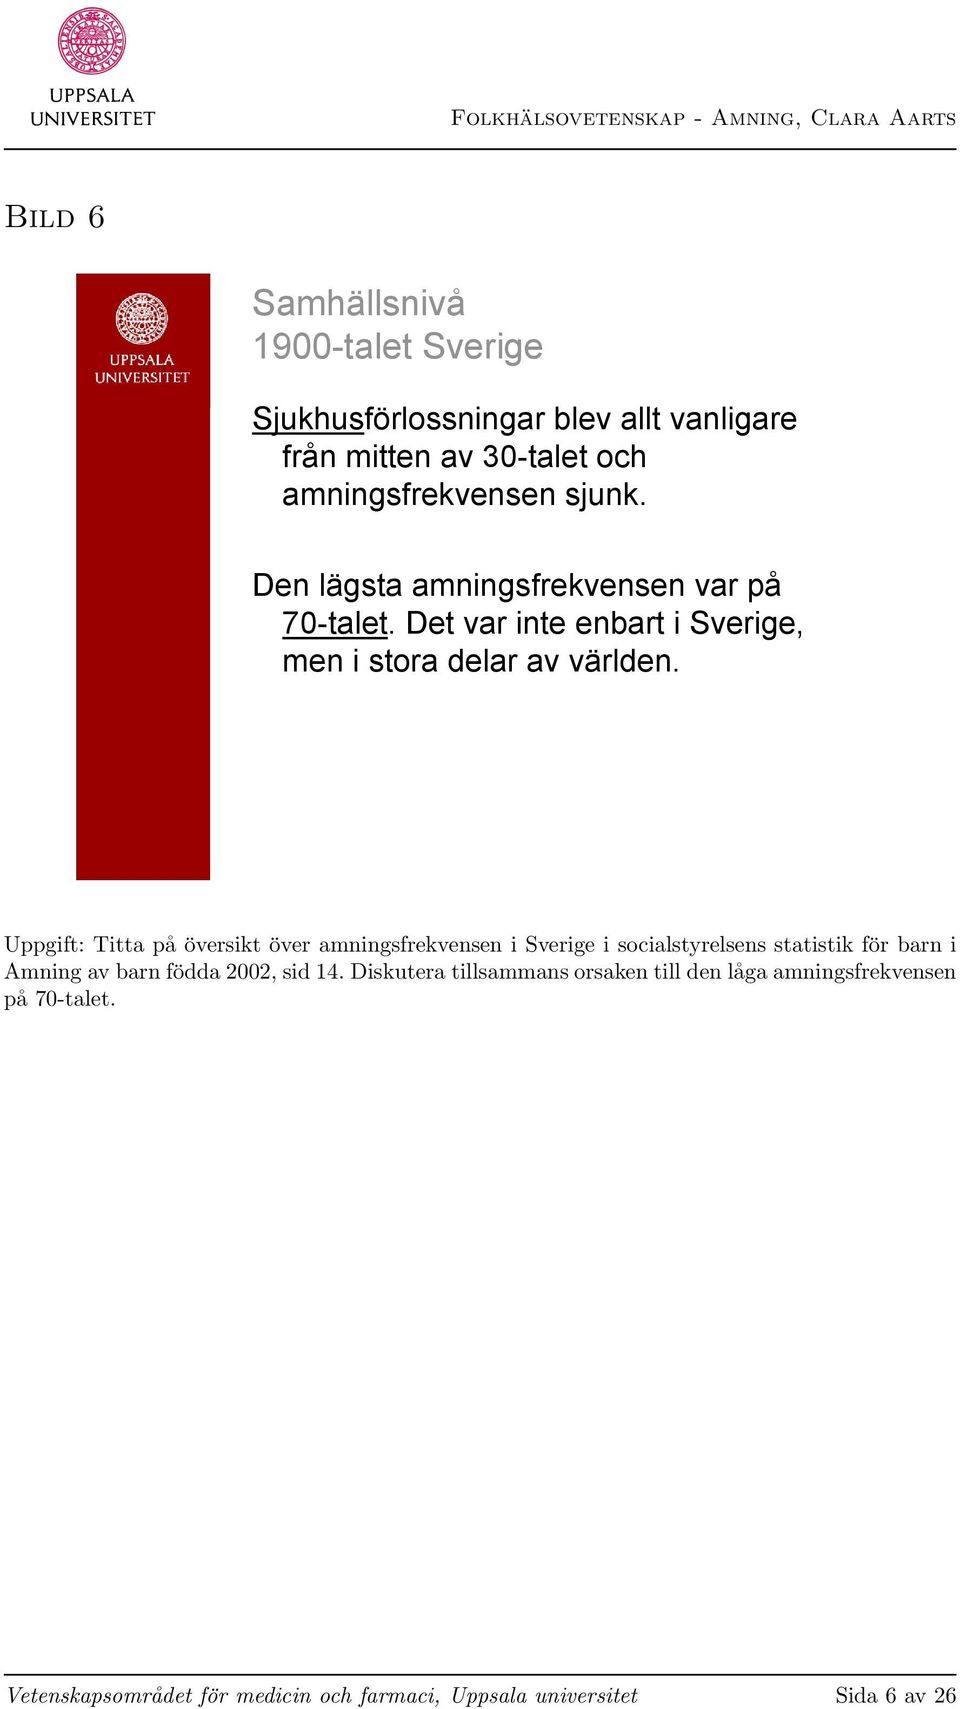 Uppgift: Titta på översikt över amningsfrekvensen i Sverige i socialstyrelsens statistik för barn i Amning av barn födda 2002, sid